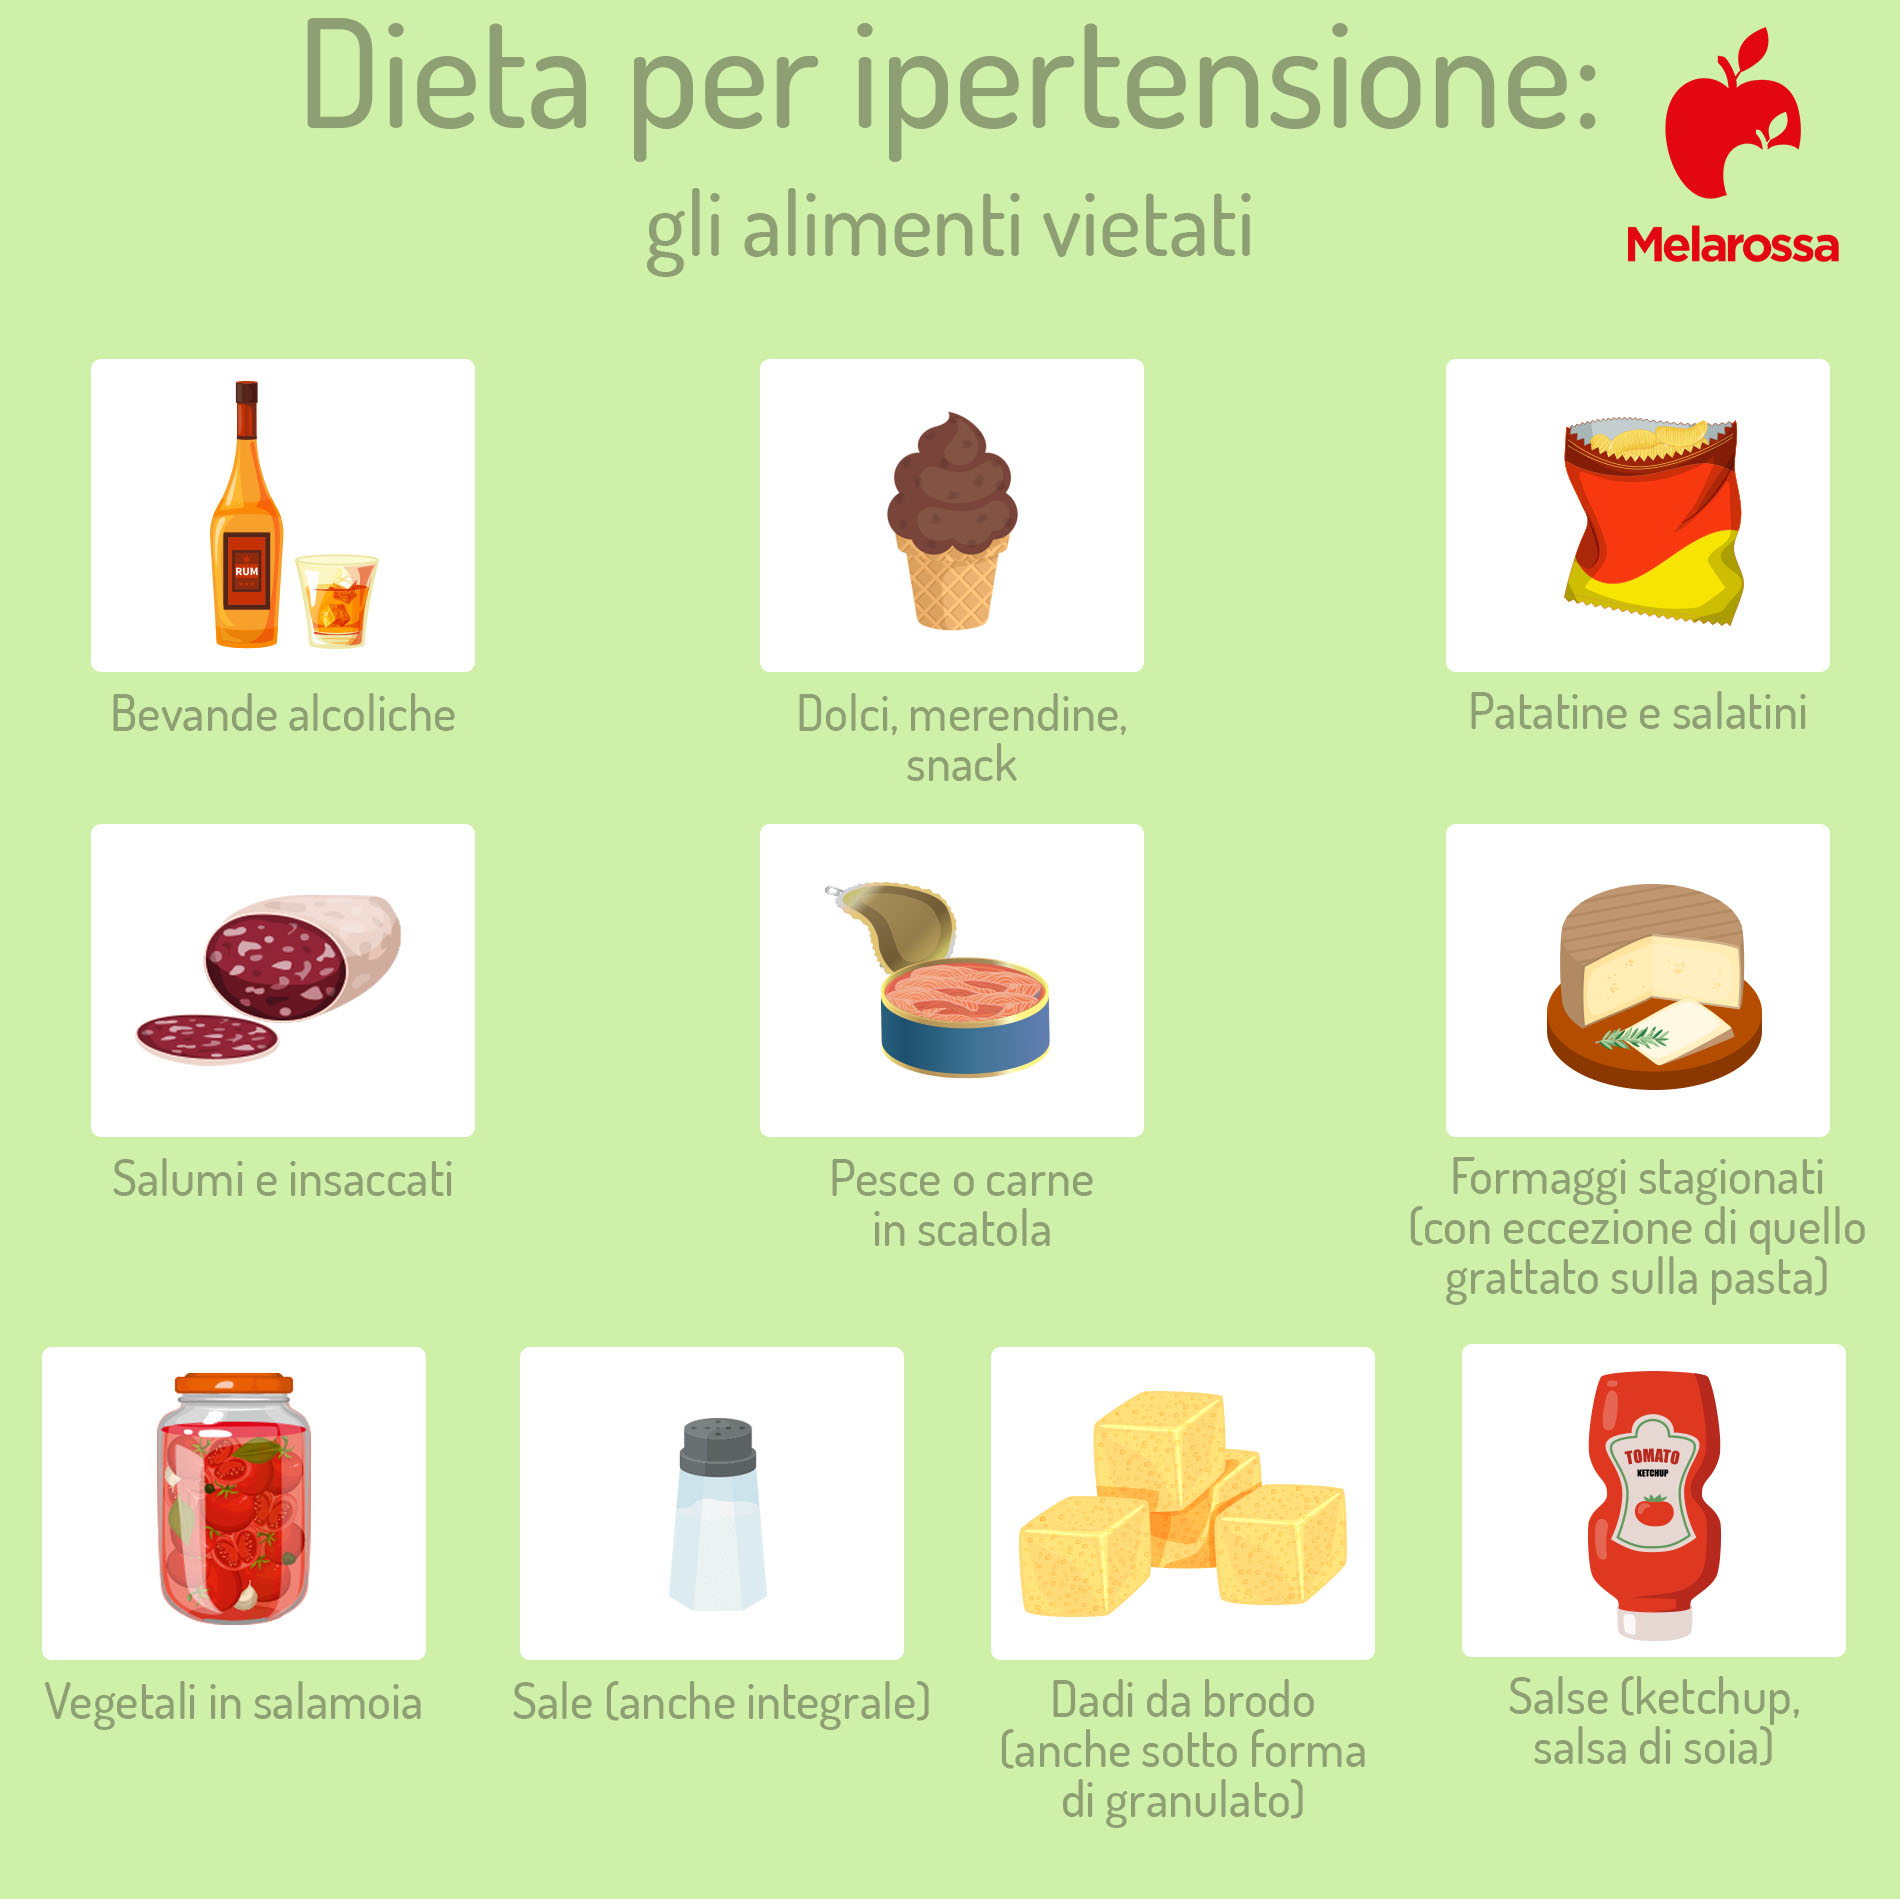 dieta per ipertensione: alimenti vietati